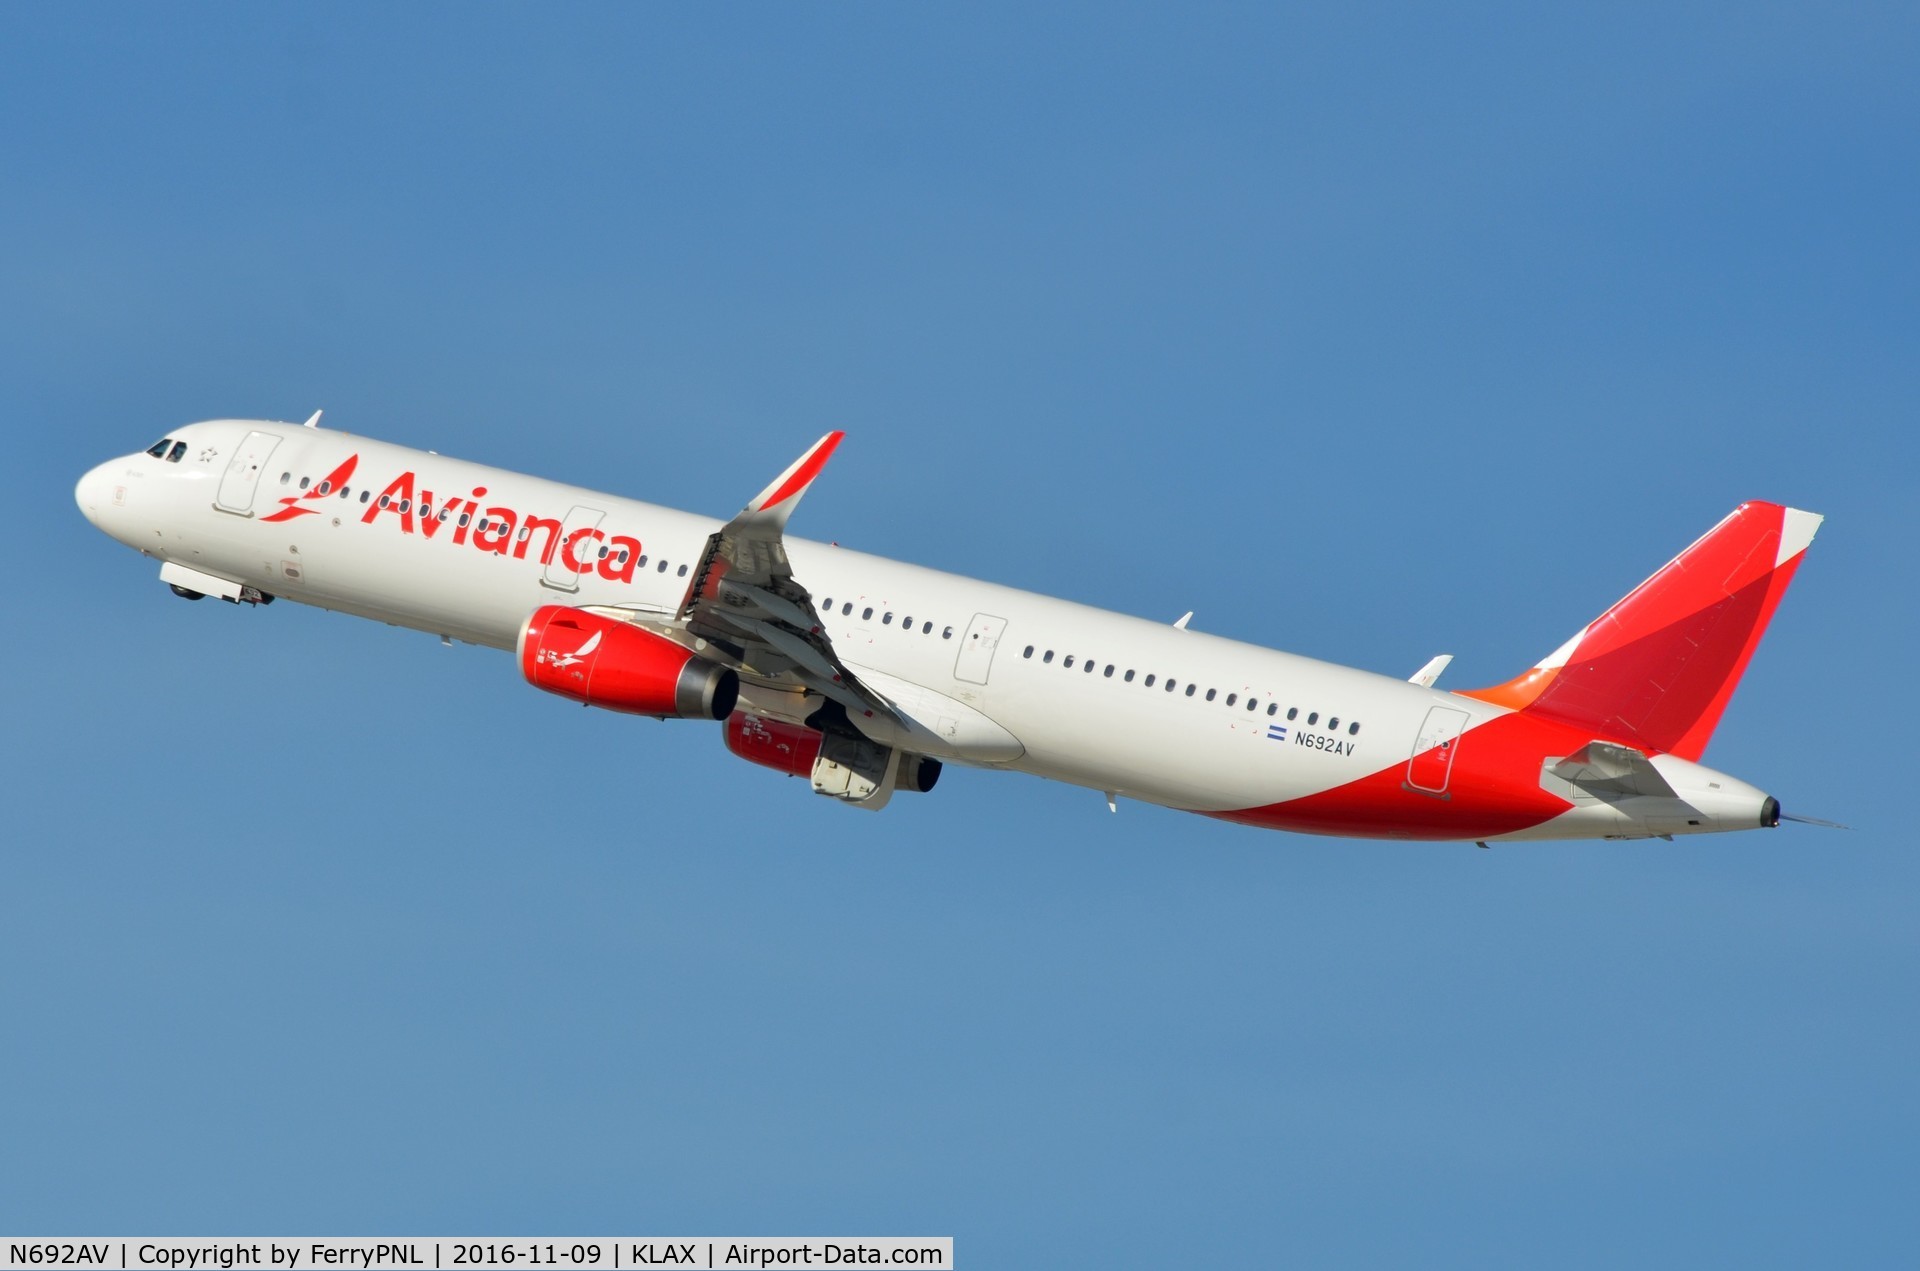 N692AV, 2014 Airbus A321-231 C/N 5936, Avianca A321 take-off.